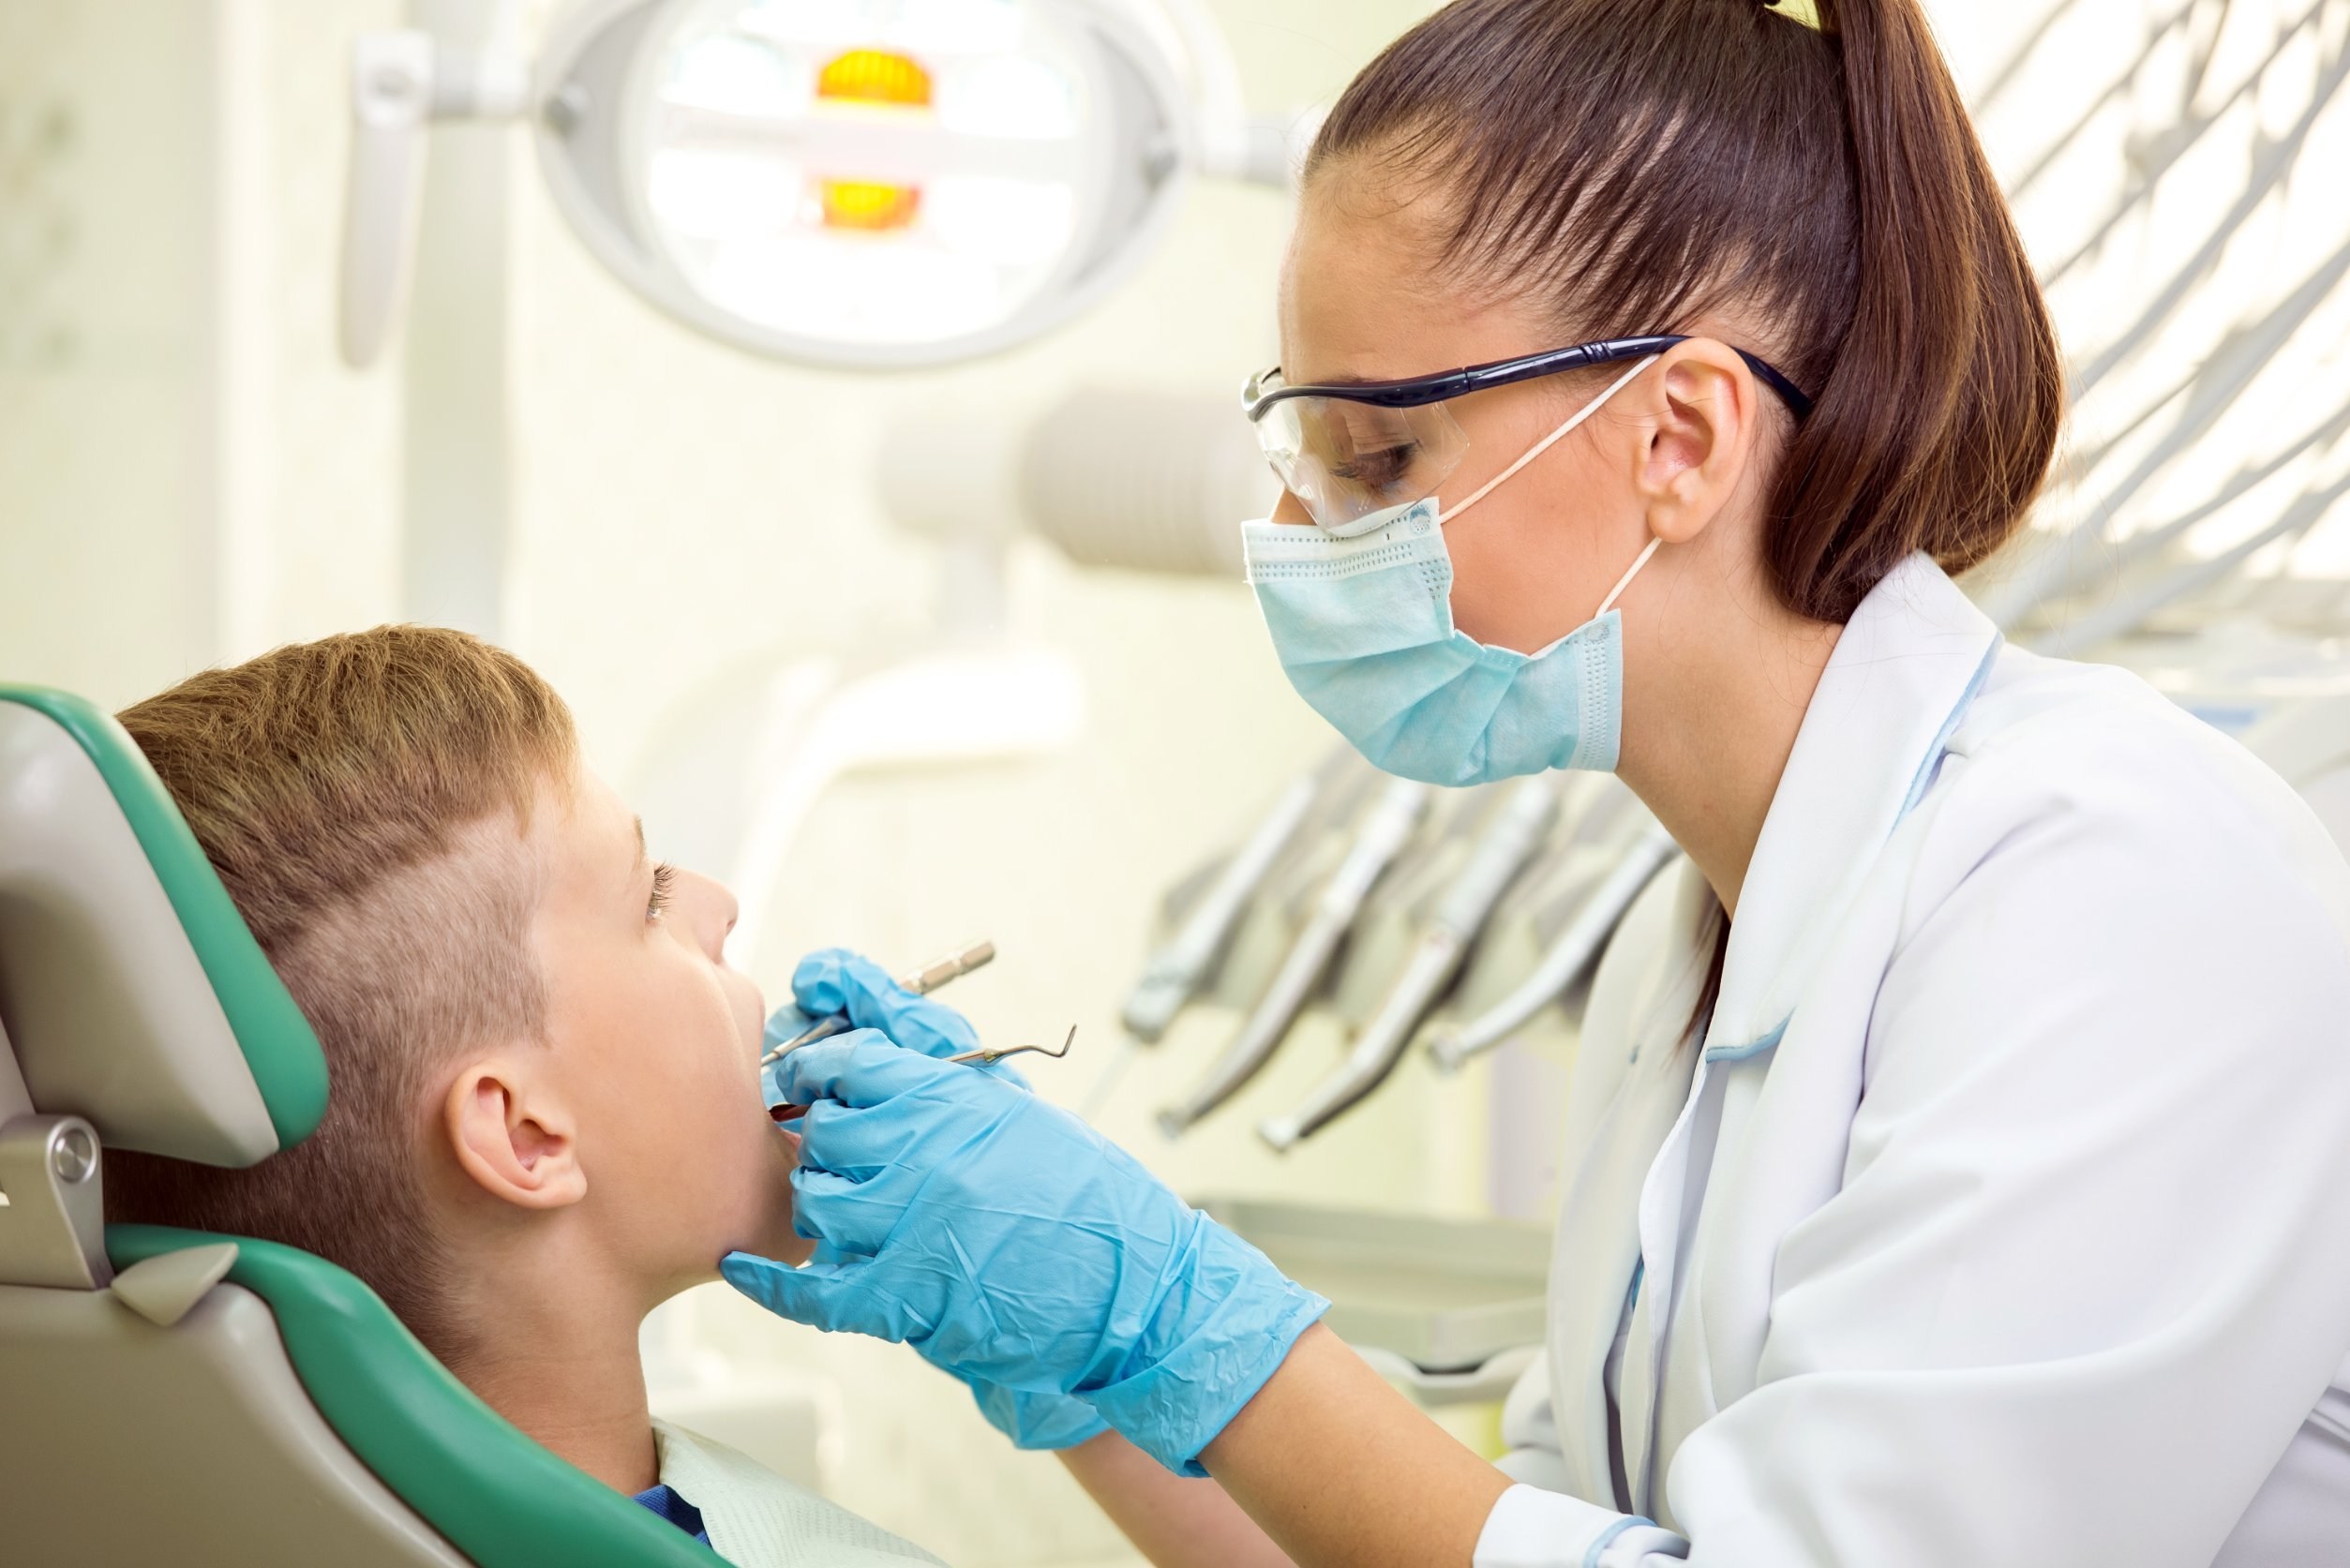 biological dental hygiene accreditation